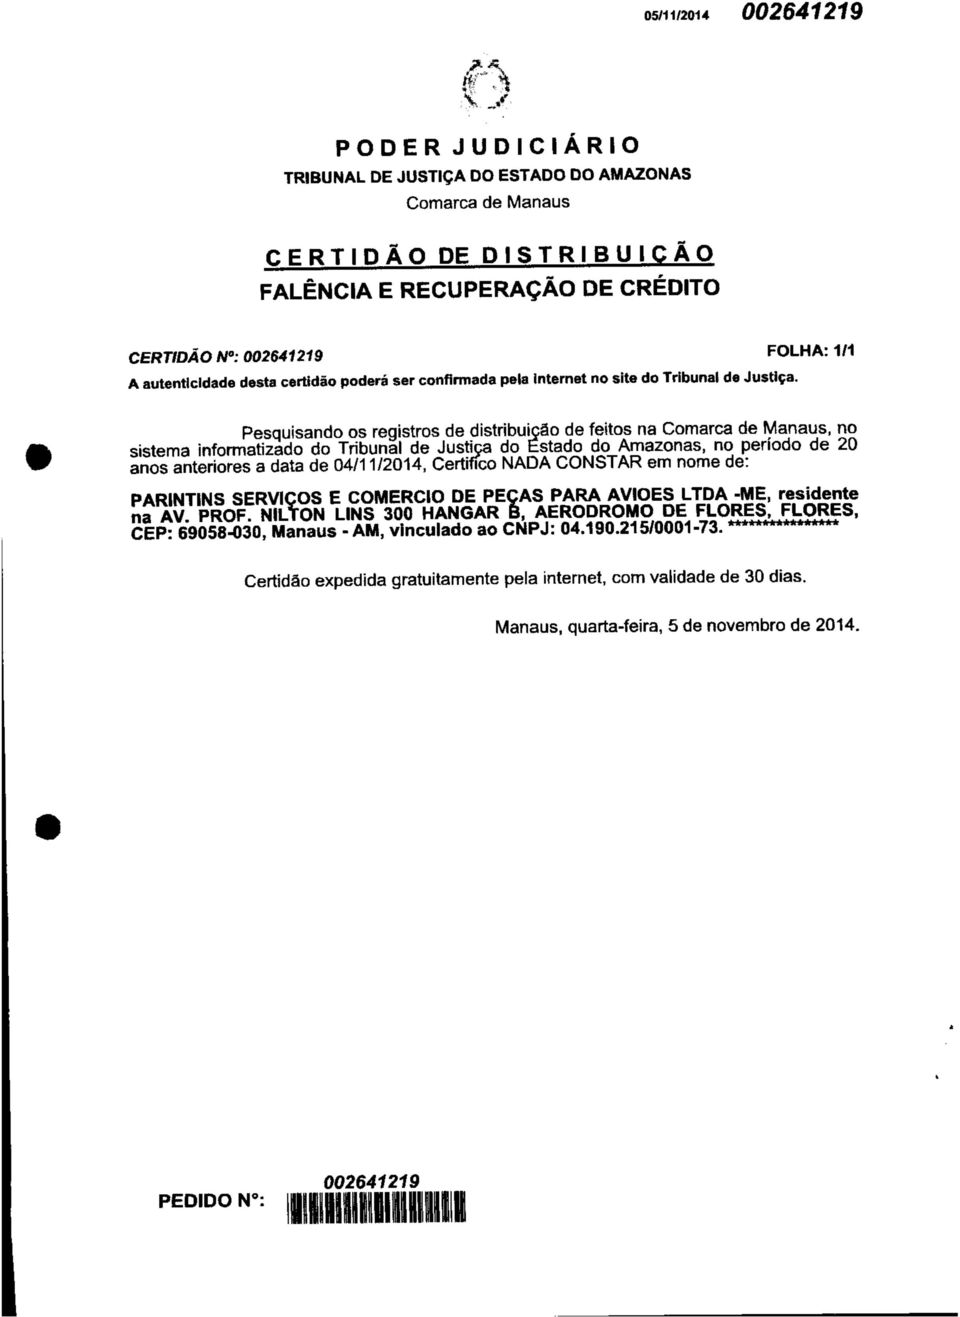 Pesquisando os registros de distribuição de feitos na Comarca de Manaus, no sistema informatizado do Tribunal de Justiça do Estado do Amazonas, no período de 20 anos anteriores a data de 04/11/2014,